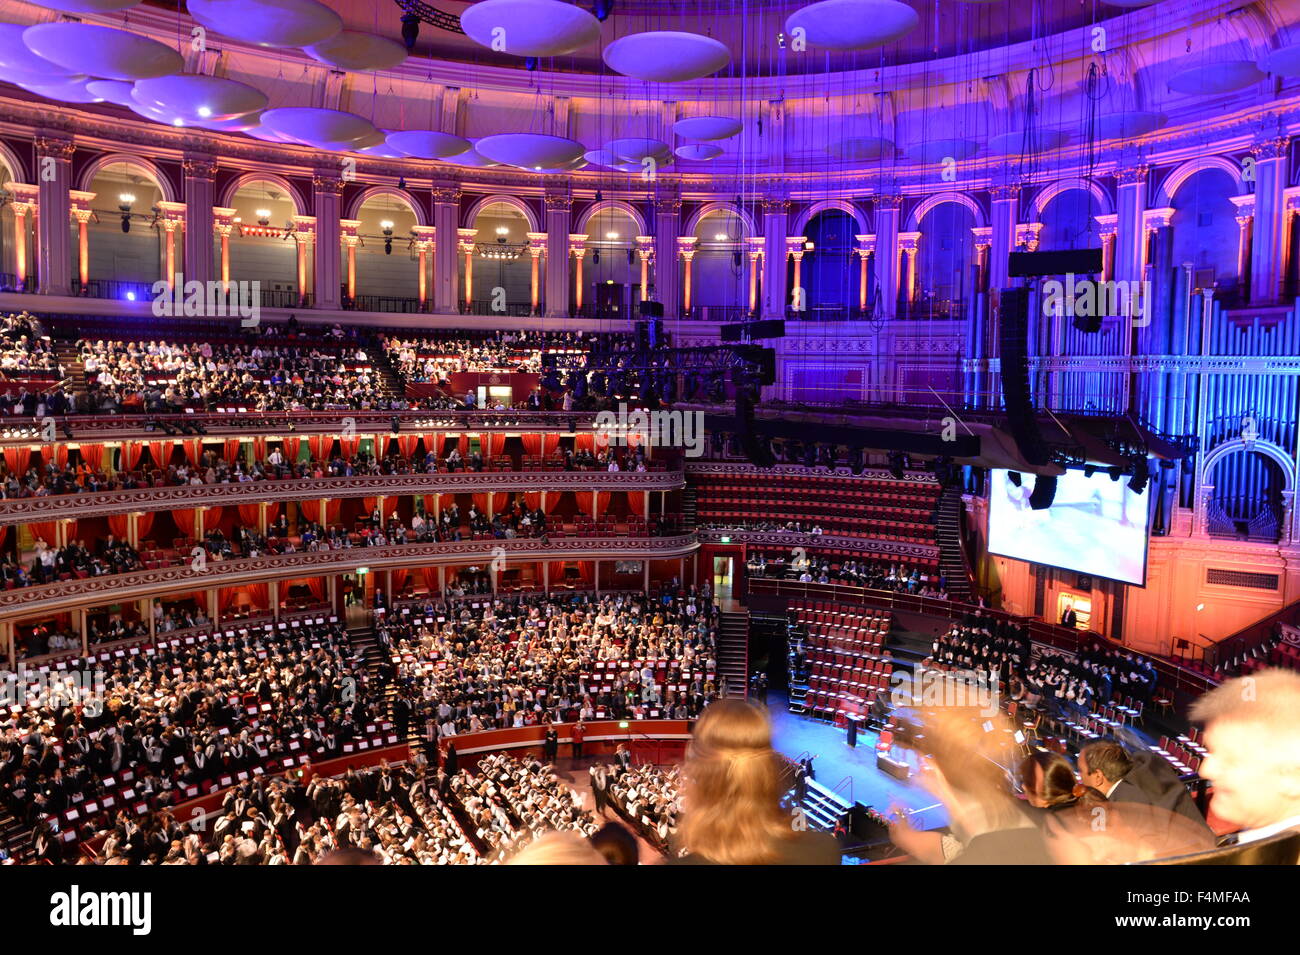 All'interno del Royal Albert Hall laureati e famiglie su Imperial College London commemorazione Foto Stock